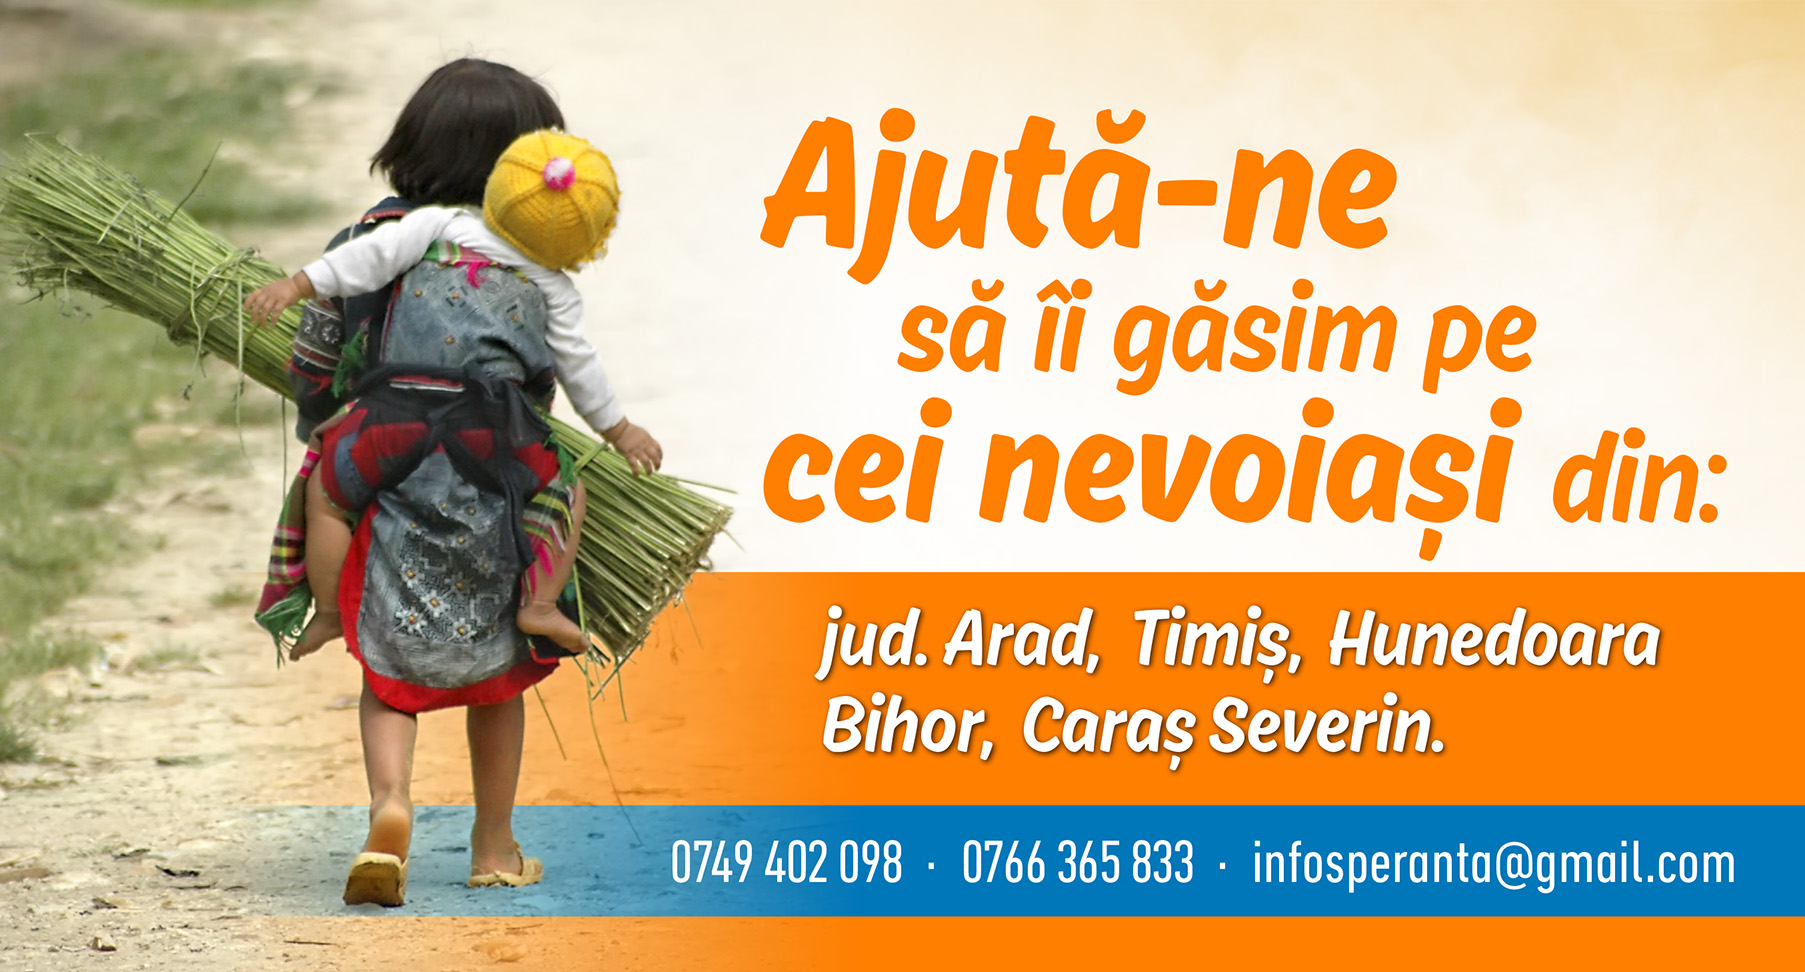 Ajuta-ne sa ii gasim pe cei nevoiasi din judetele Caras Severin, Hunedoara, Bihor, Timis si Arad